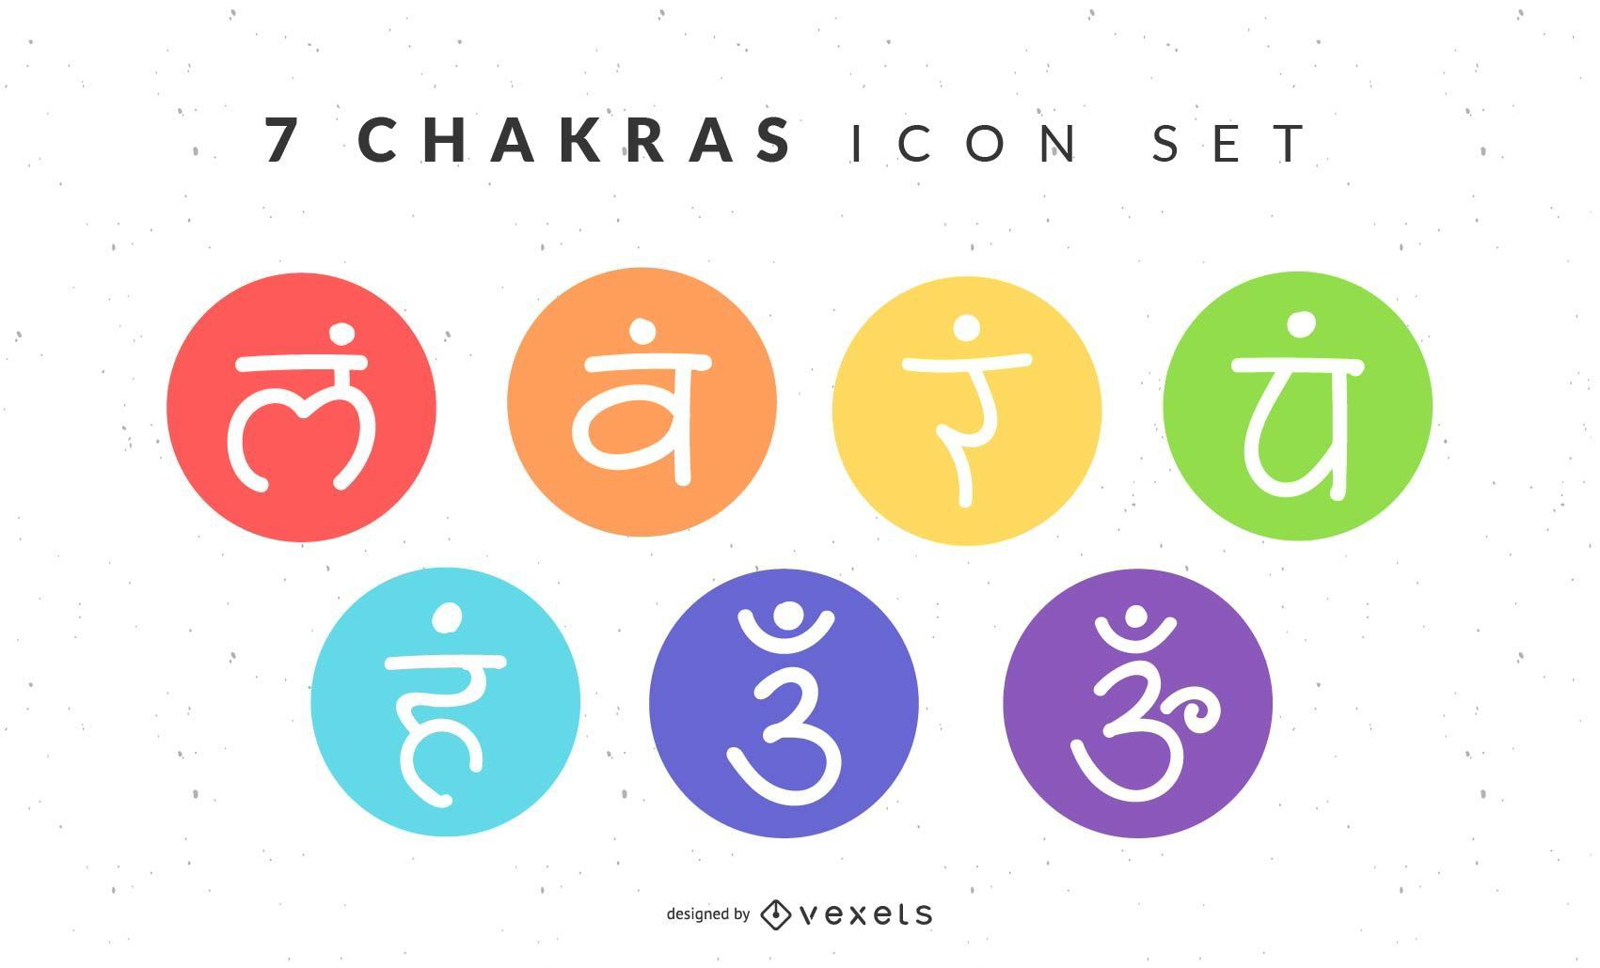 7 Chakras Icon Set